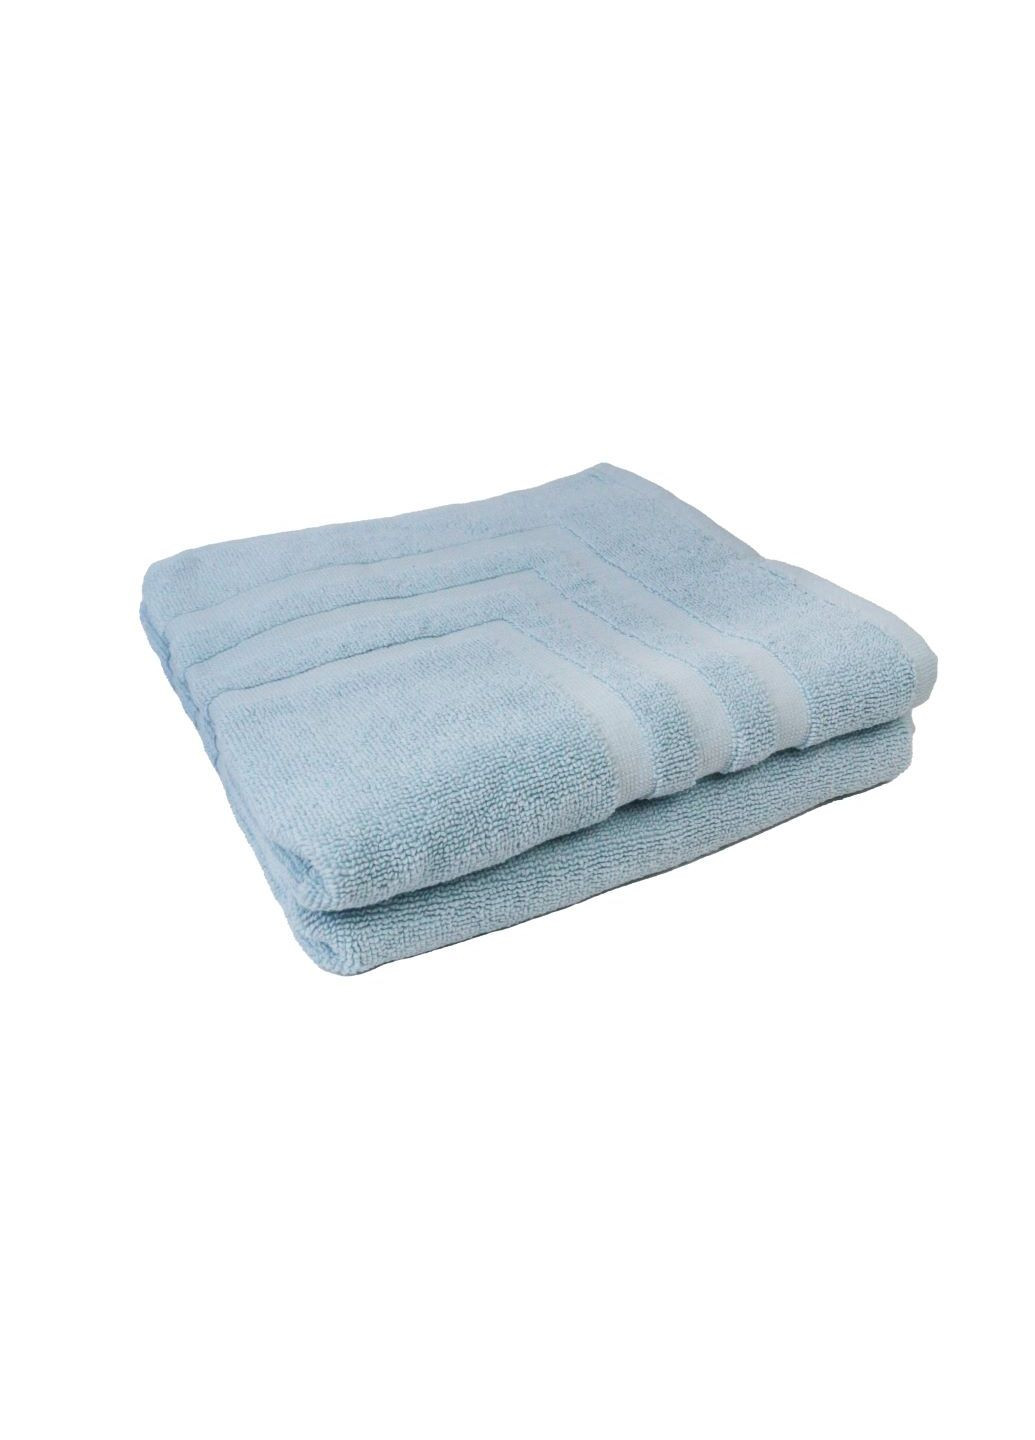 Home Ideas набор полотенец-ковриков махровых 2 шт 50х75 см голубые голубой производство - Германия